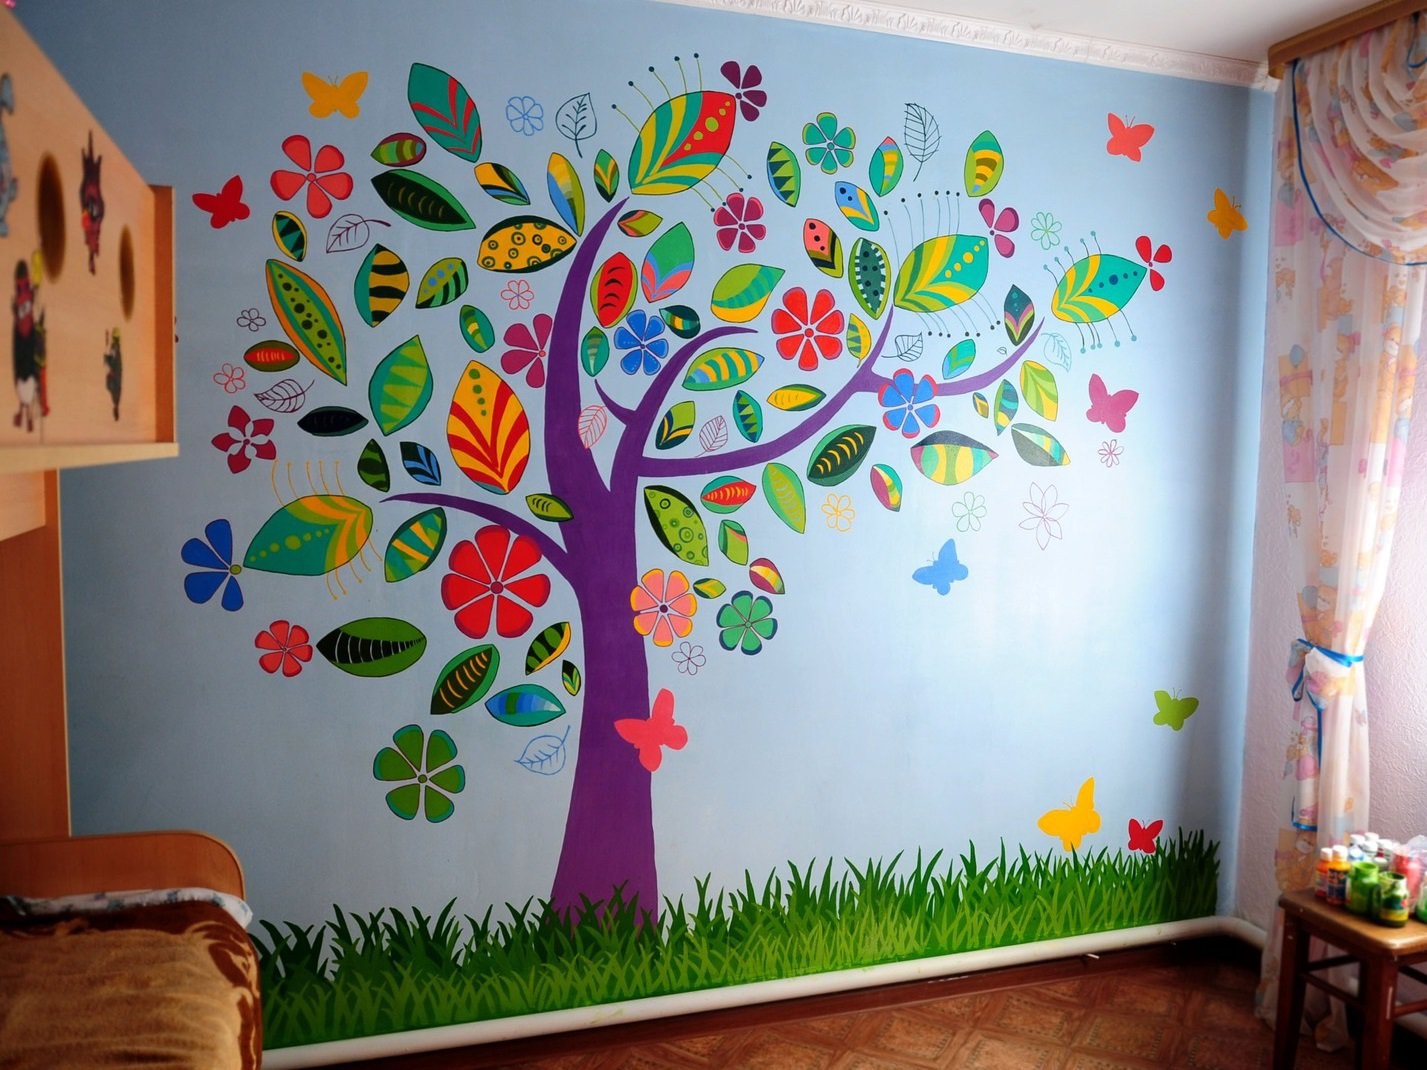 Идеи для дерева на стене в интерьере помещения: объемное или нарисованное пошагово